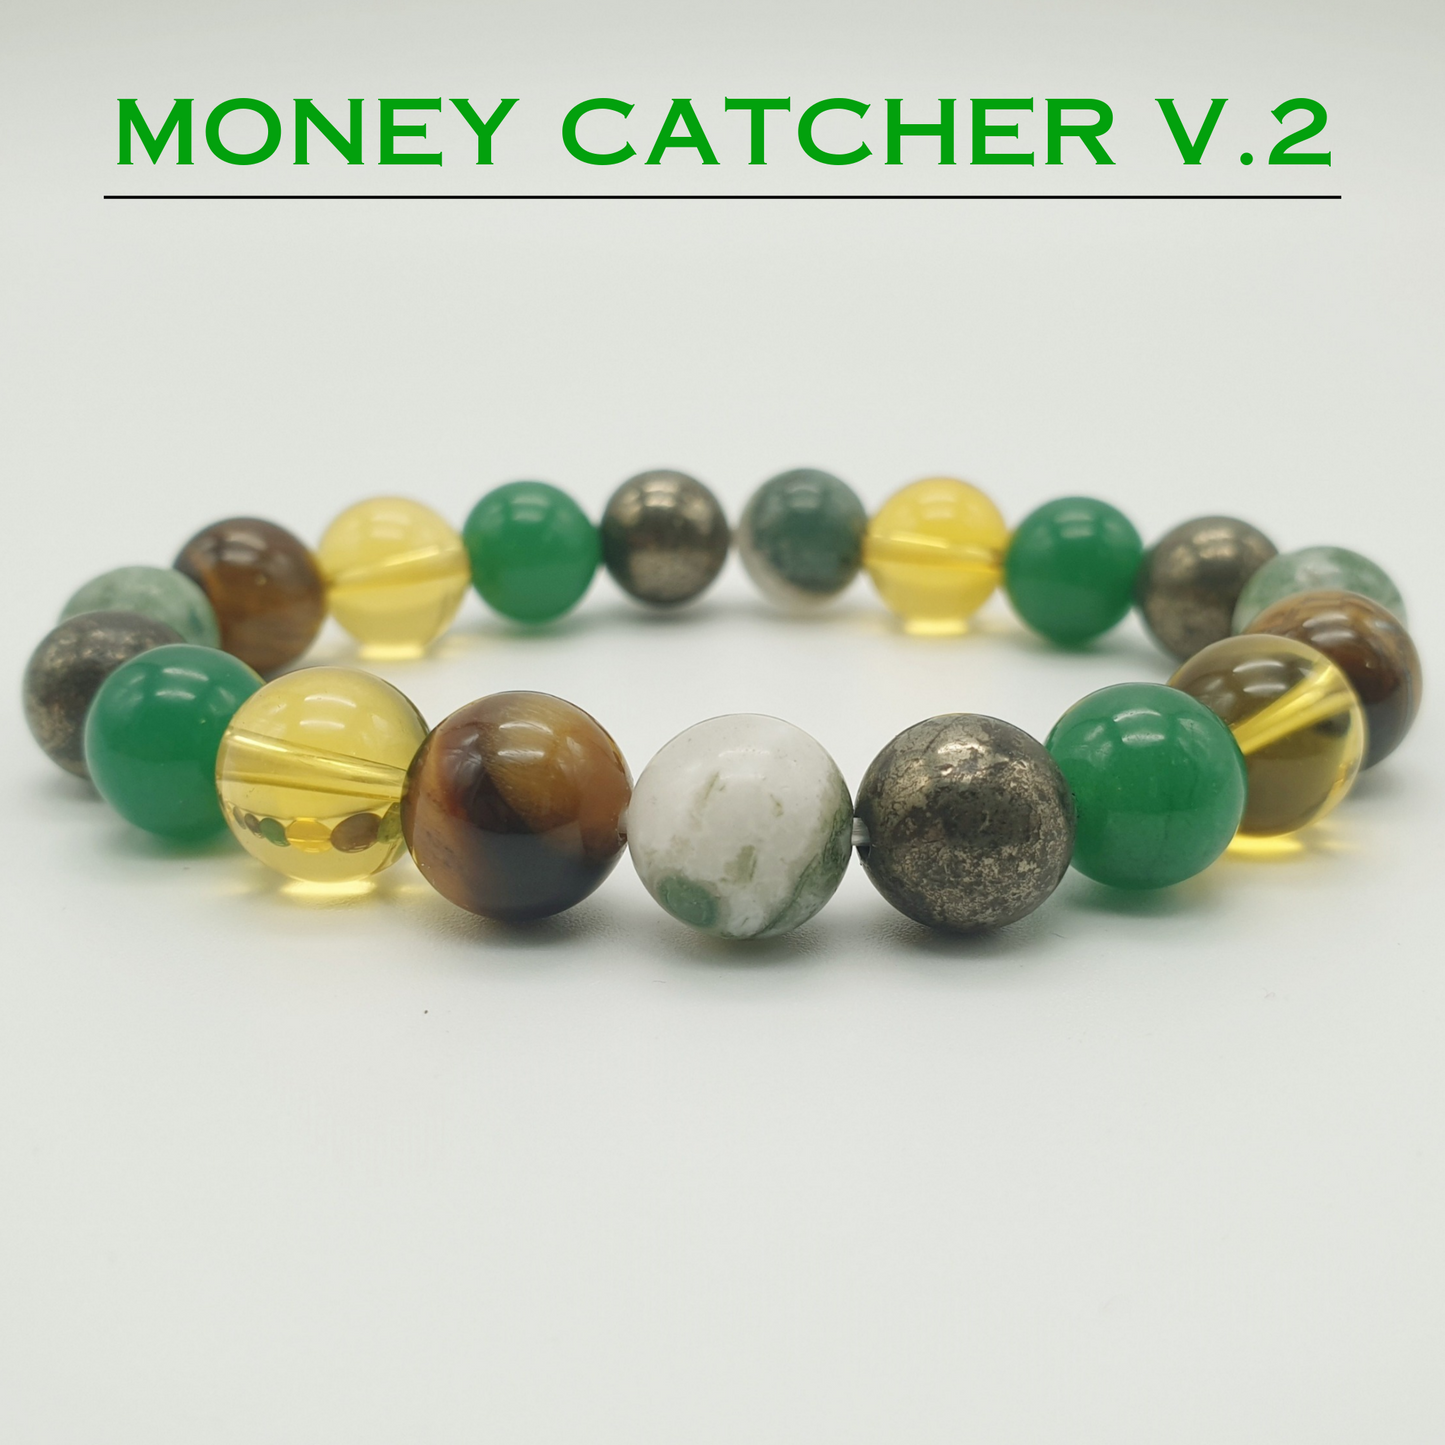 Authentic Money Catcher V.2